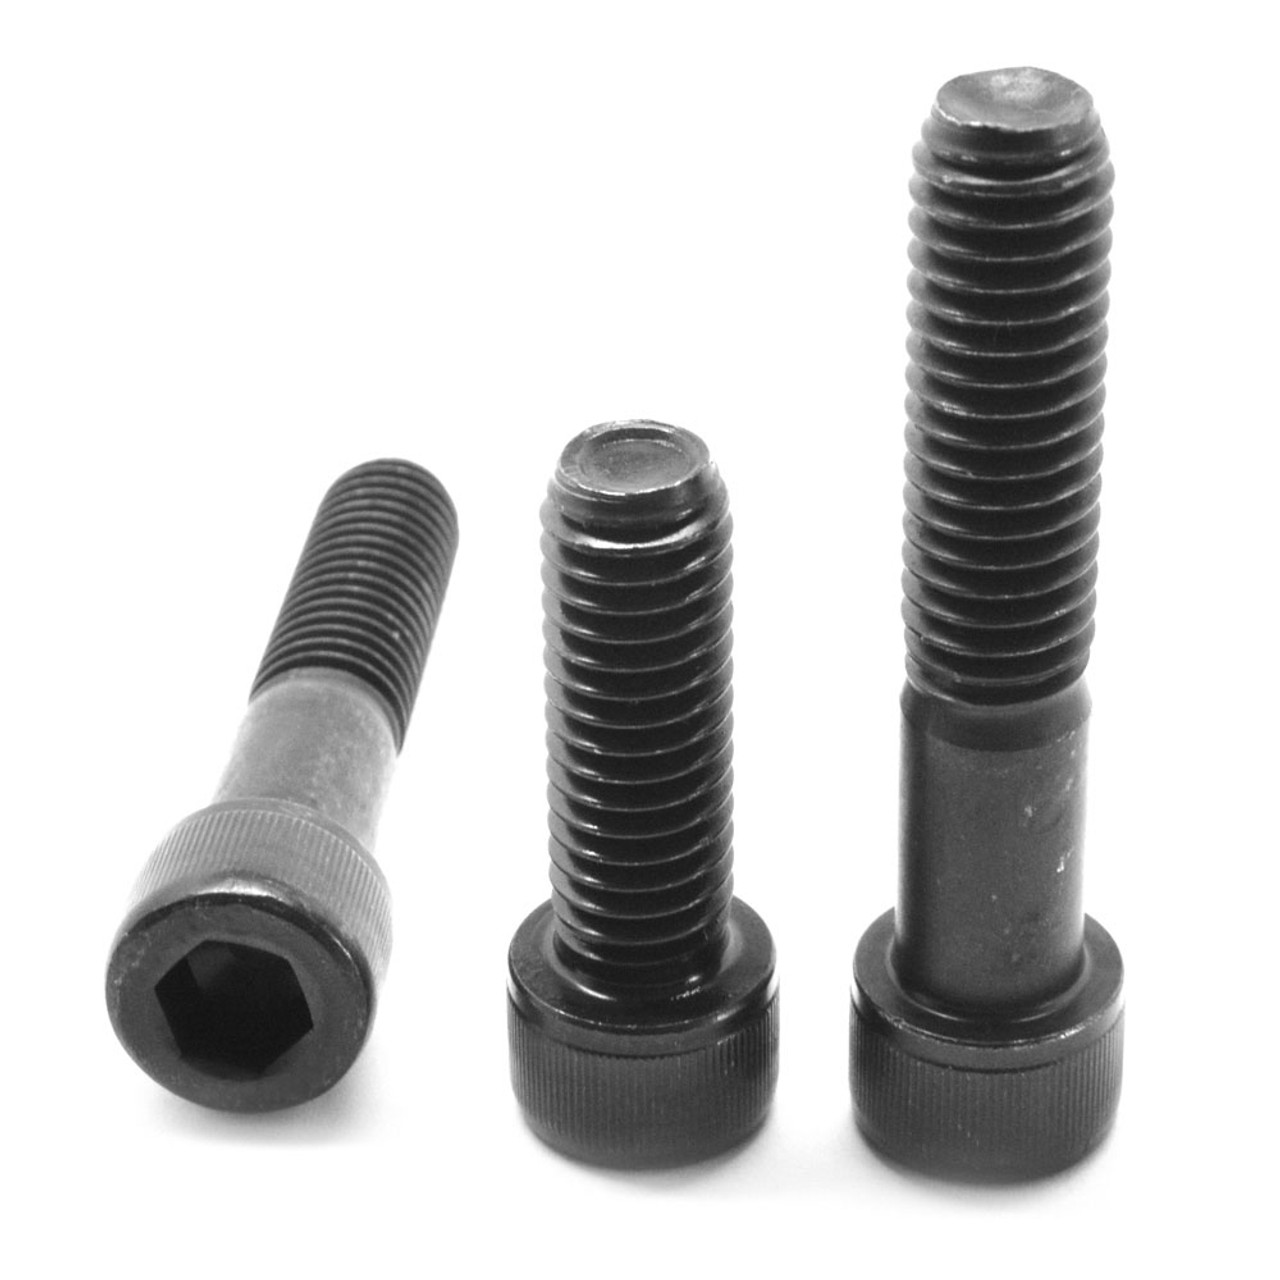 M10-1.0 Fine Thread 304 Stainless Steel Socket Head Caps Screws Metric DIN 912 